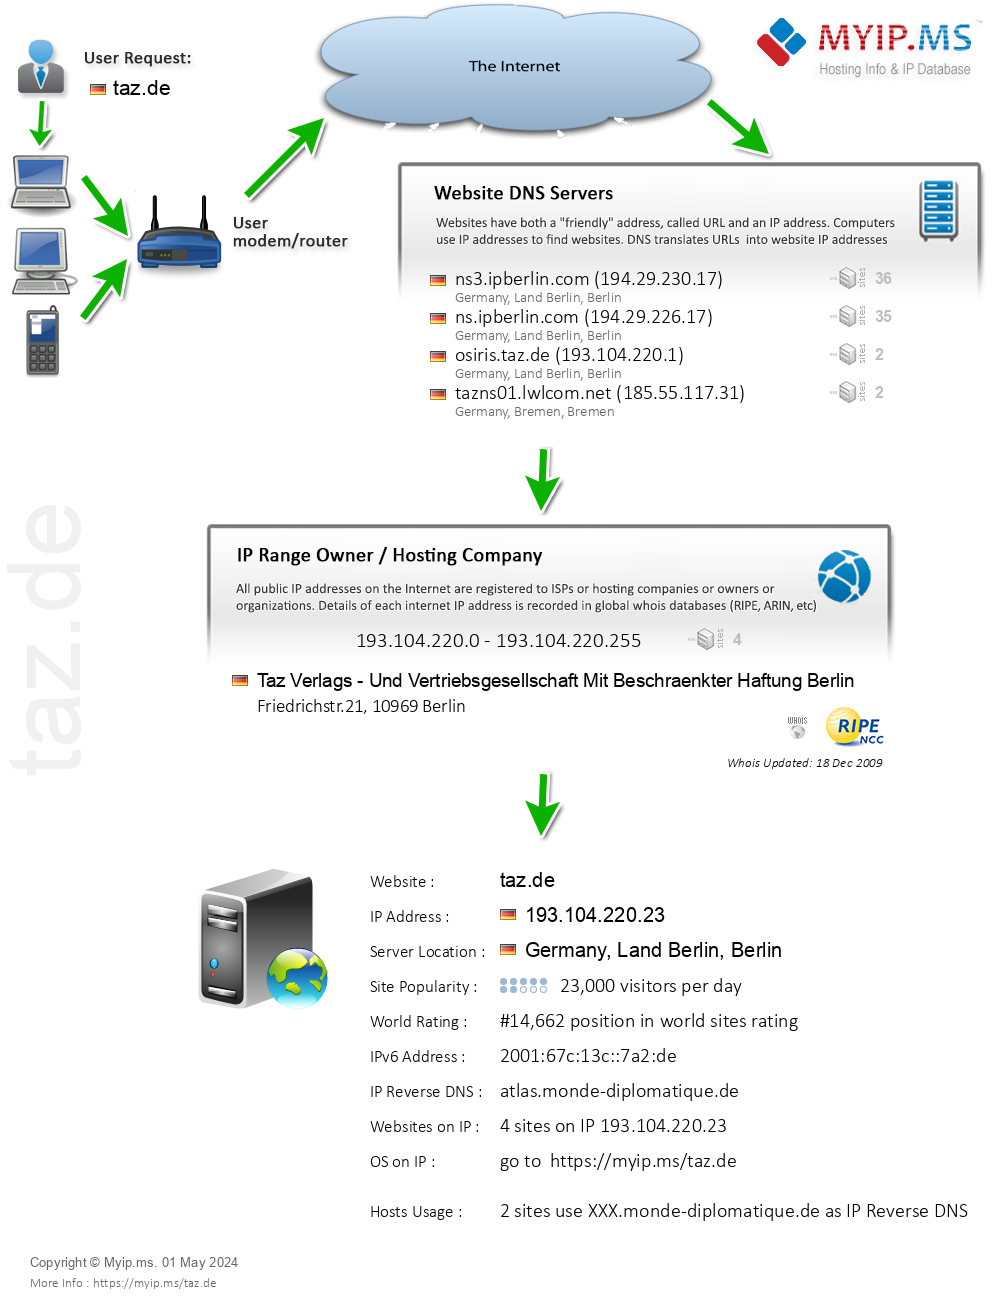 Taz.de - Website Hosting Visual IP Diagram